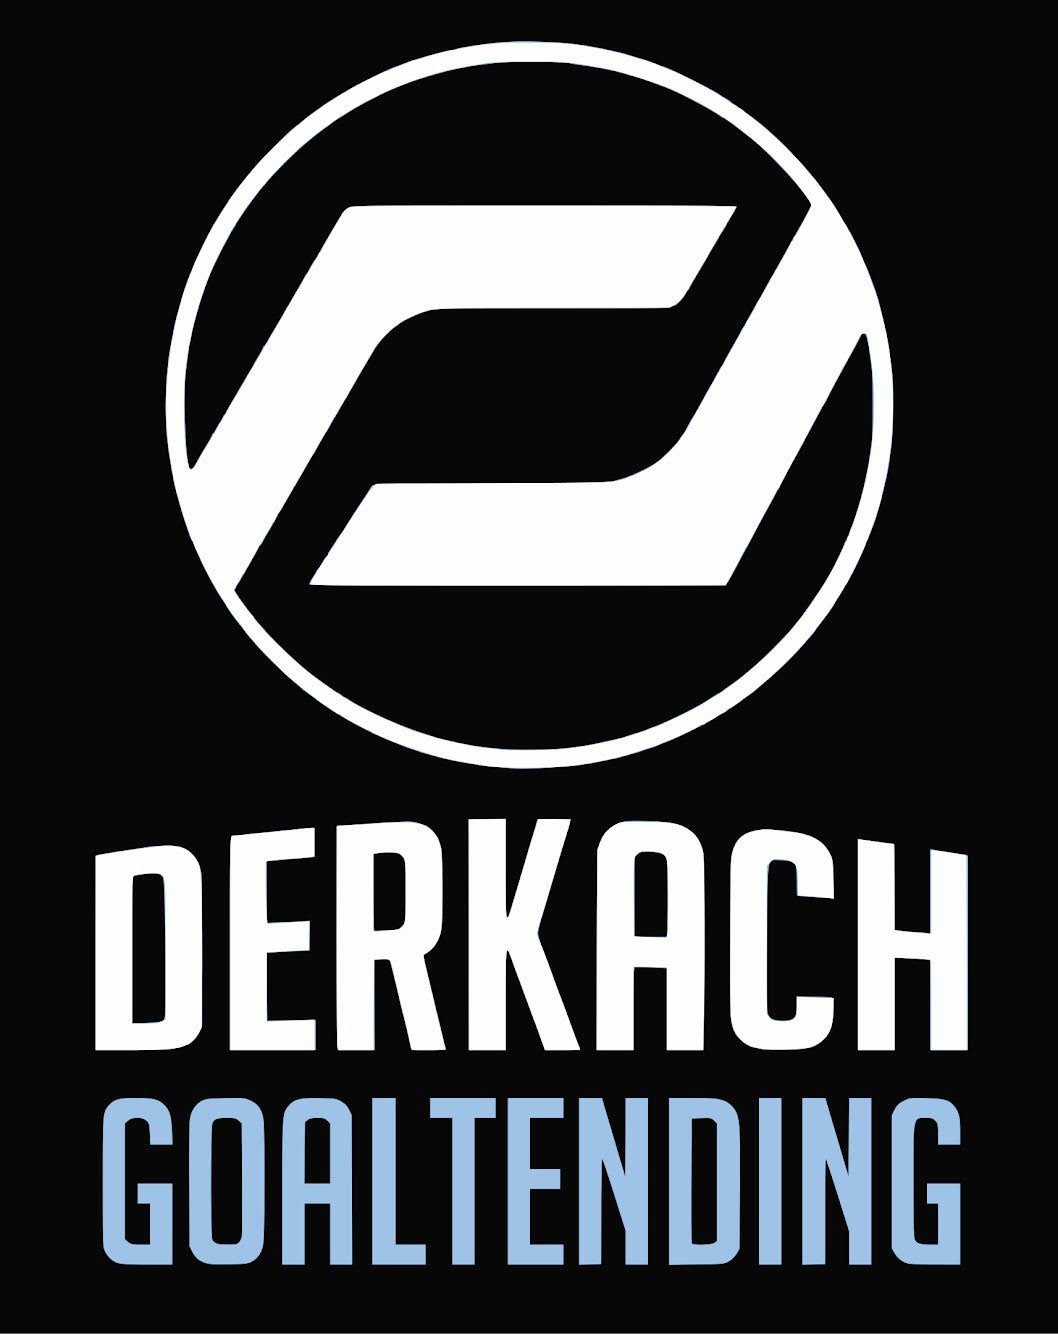 Derkach goaltending logo